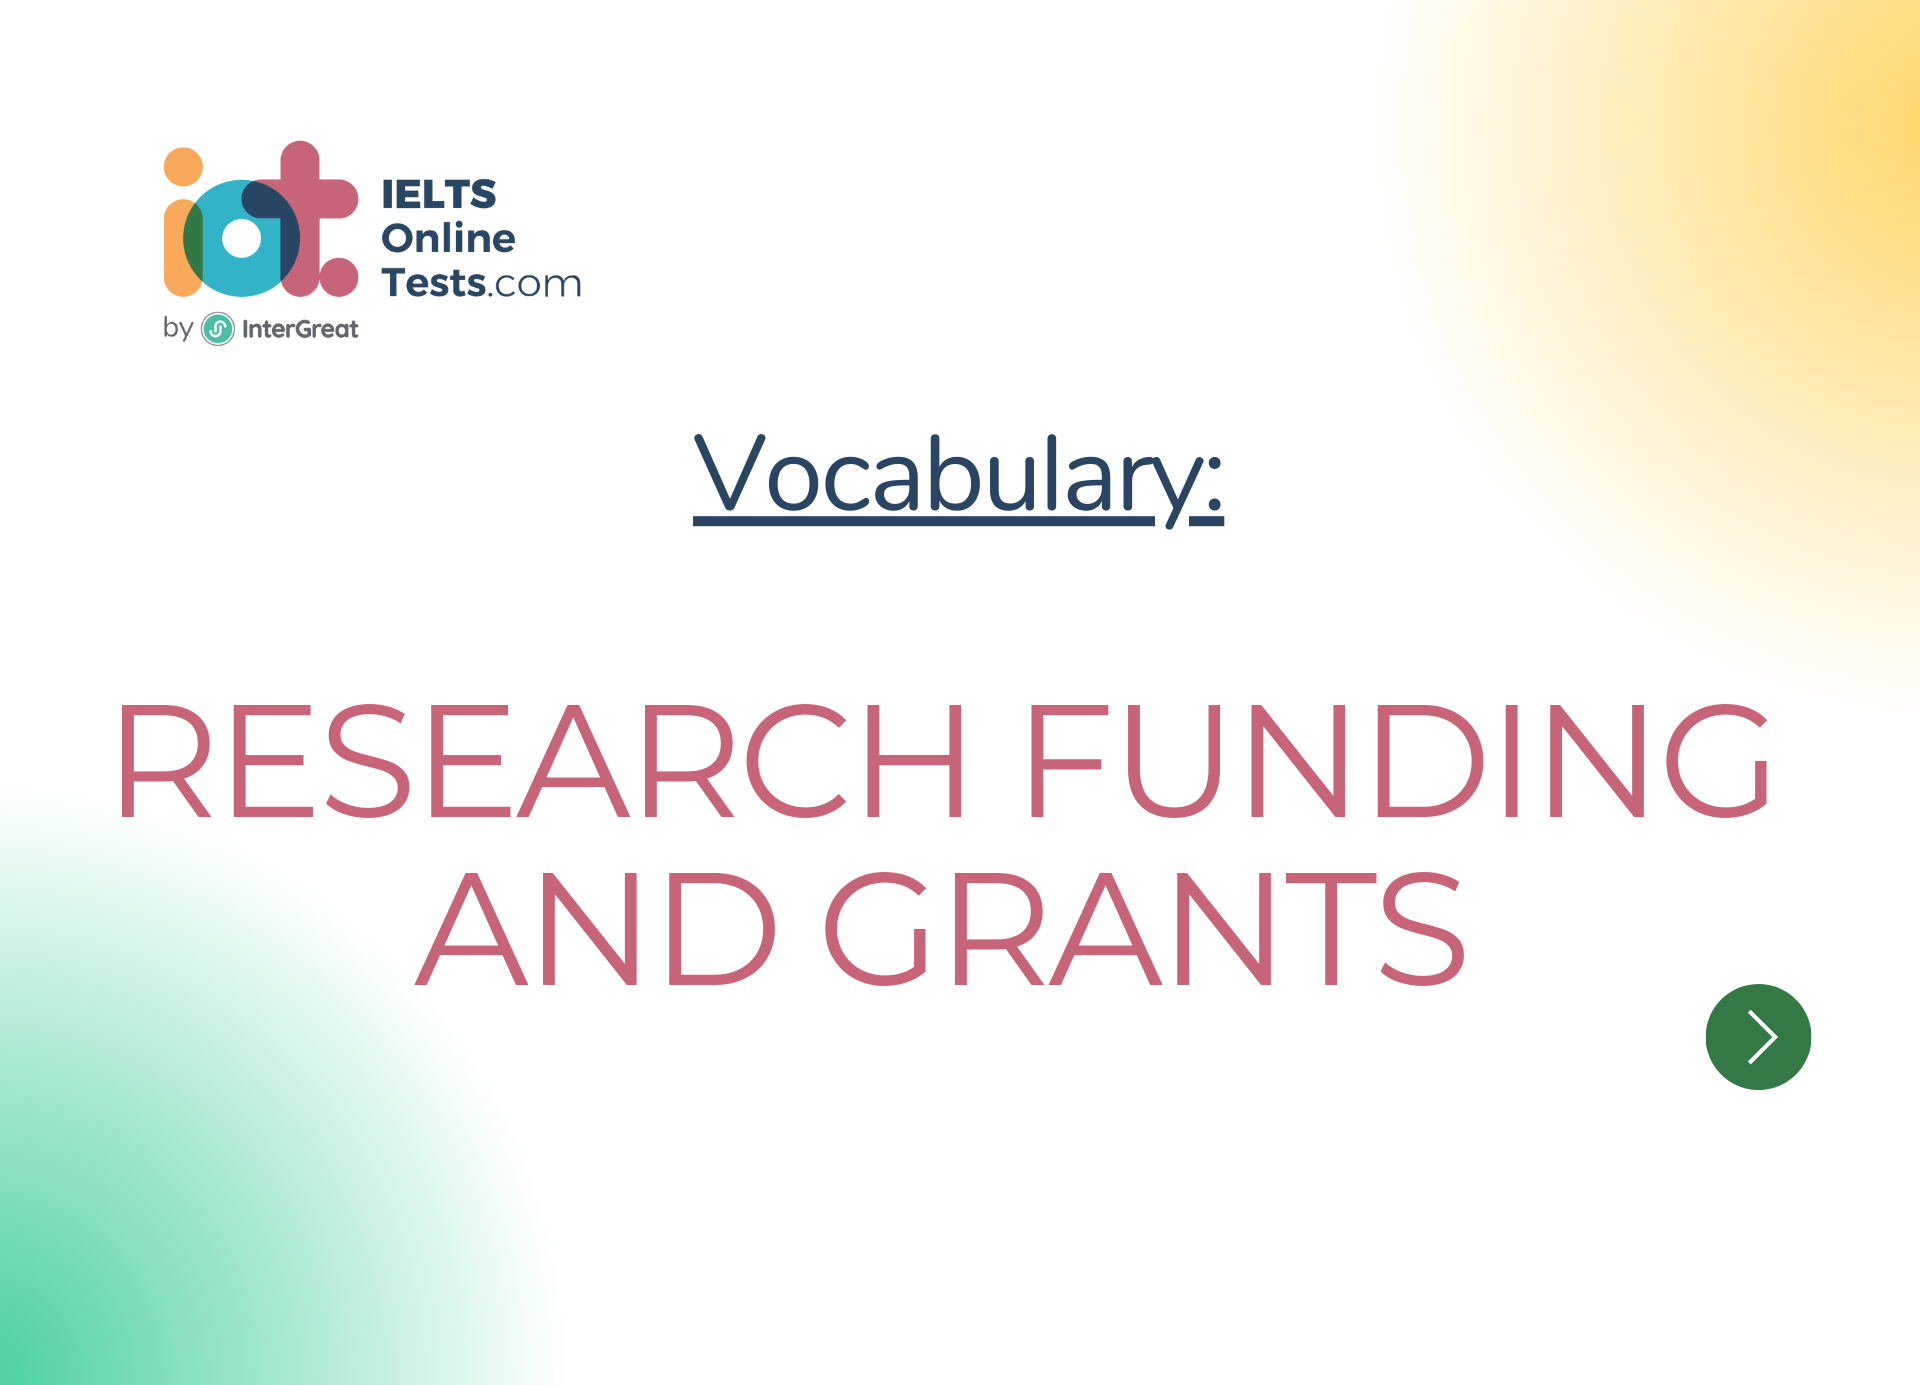 Tài trợ và khoản hỗ trợ nghiên cứu (Research funding and grants)